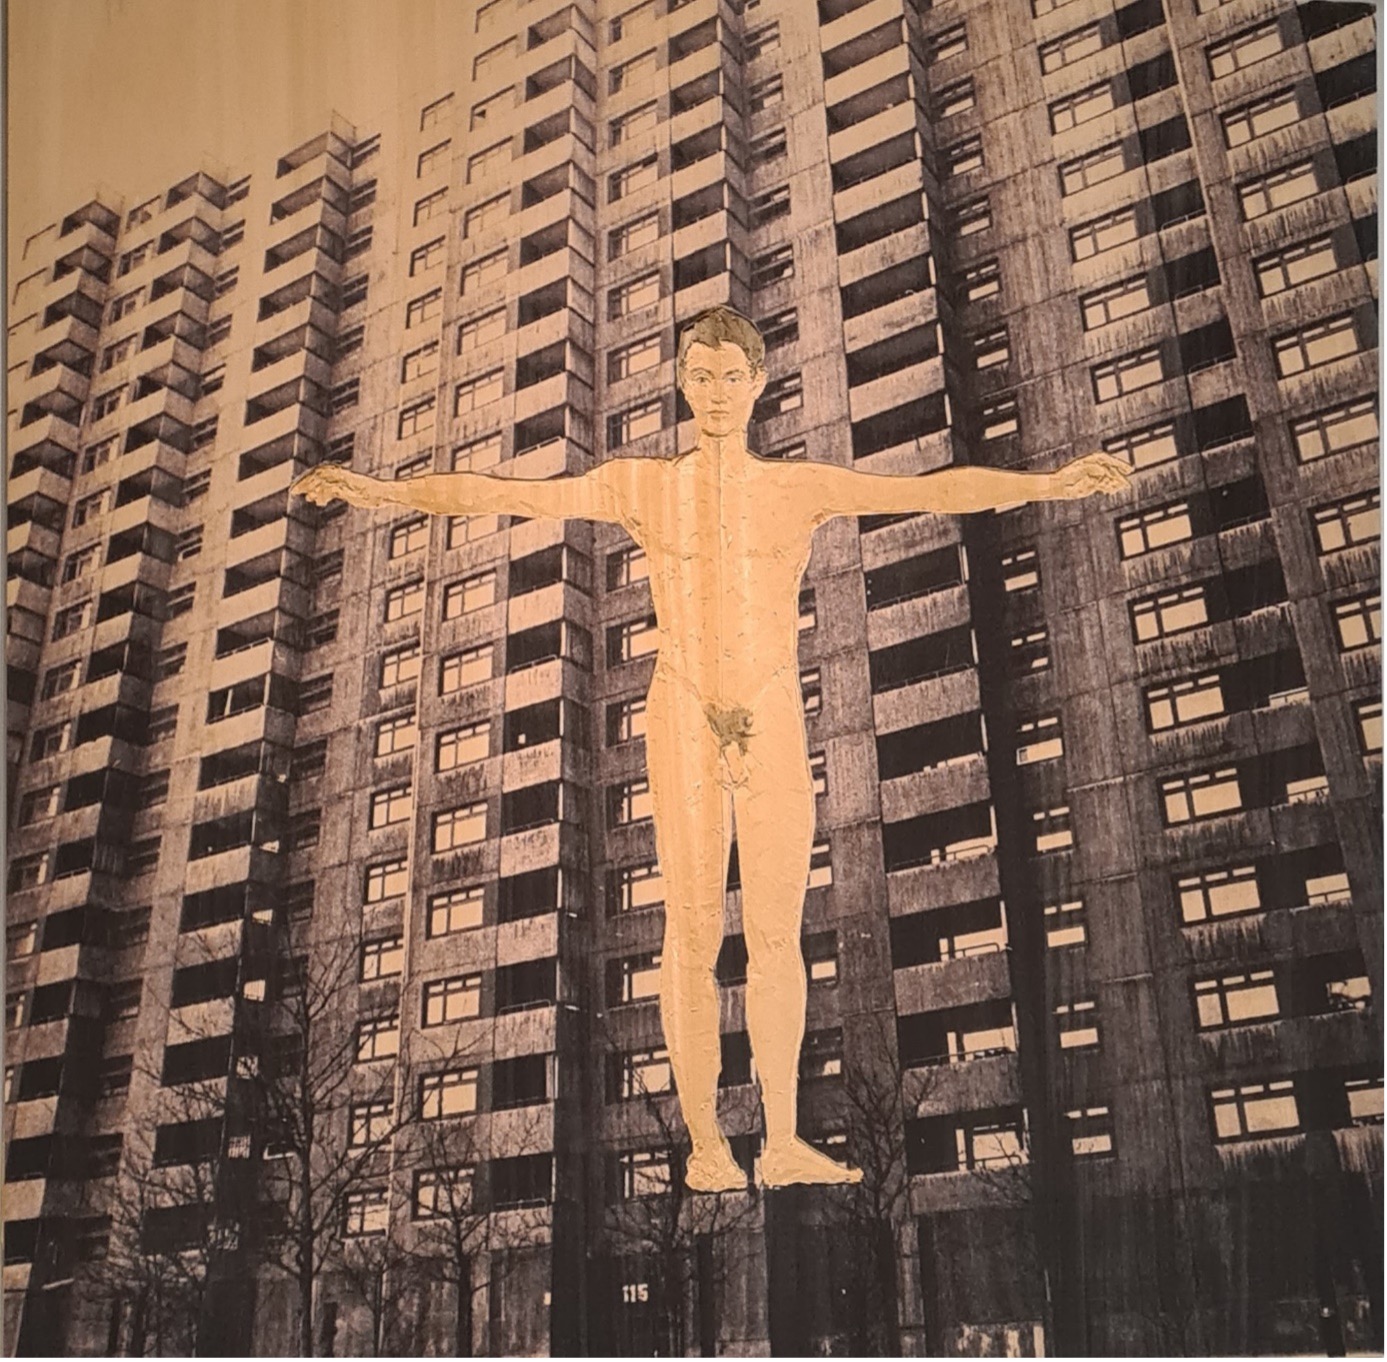 Stephan Balkenhol Zeitfenster. Hochhaus im Hintergrund, Relief eines nackten Mannes aus Holz im Vordergrund, Arme gespreizt
